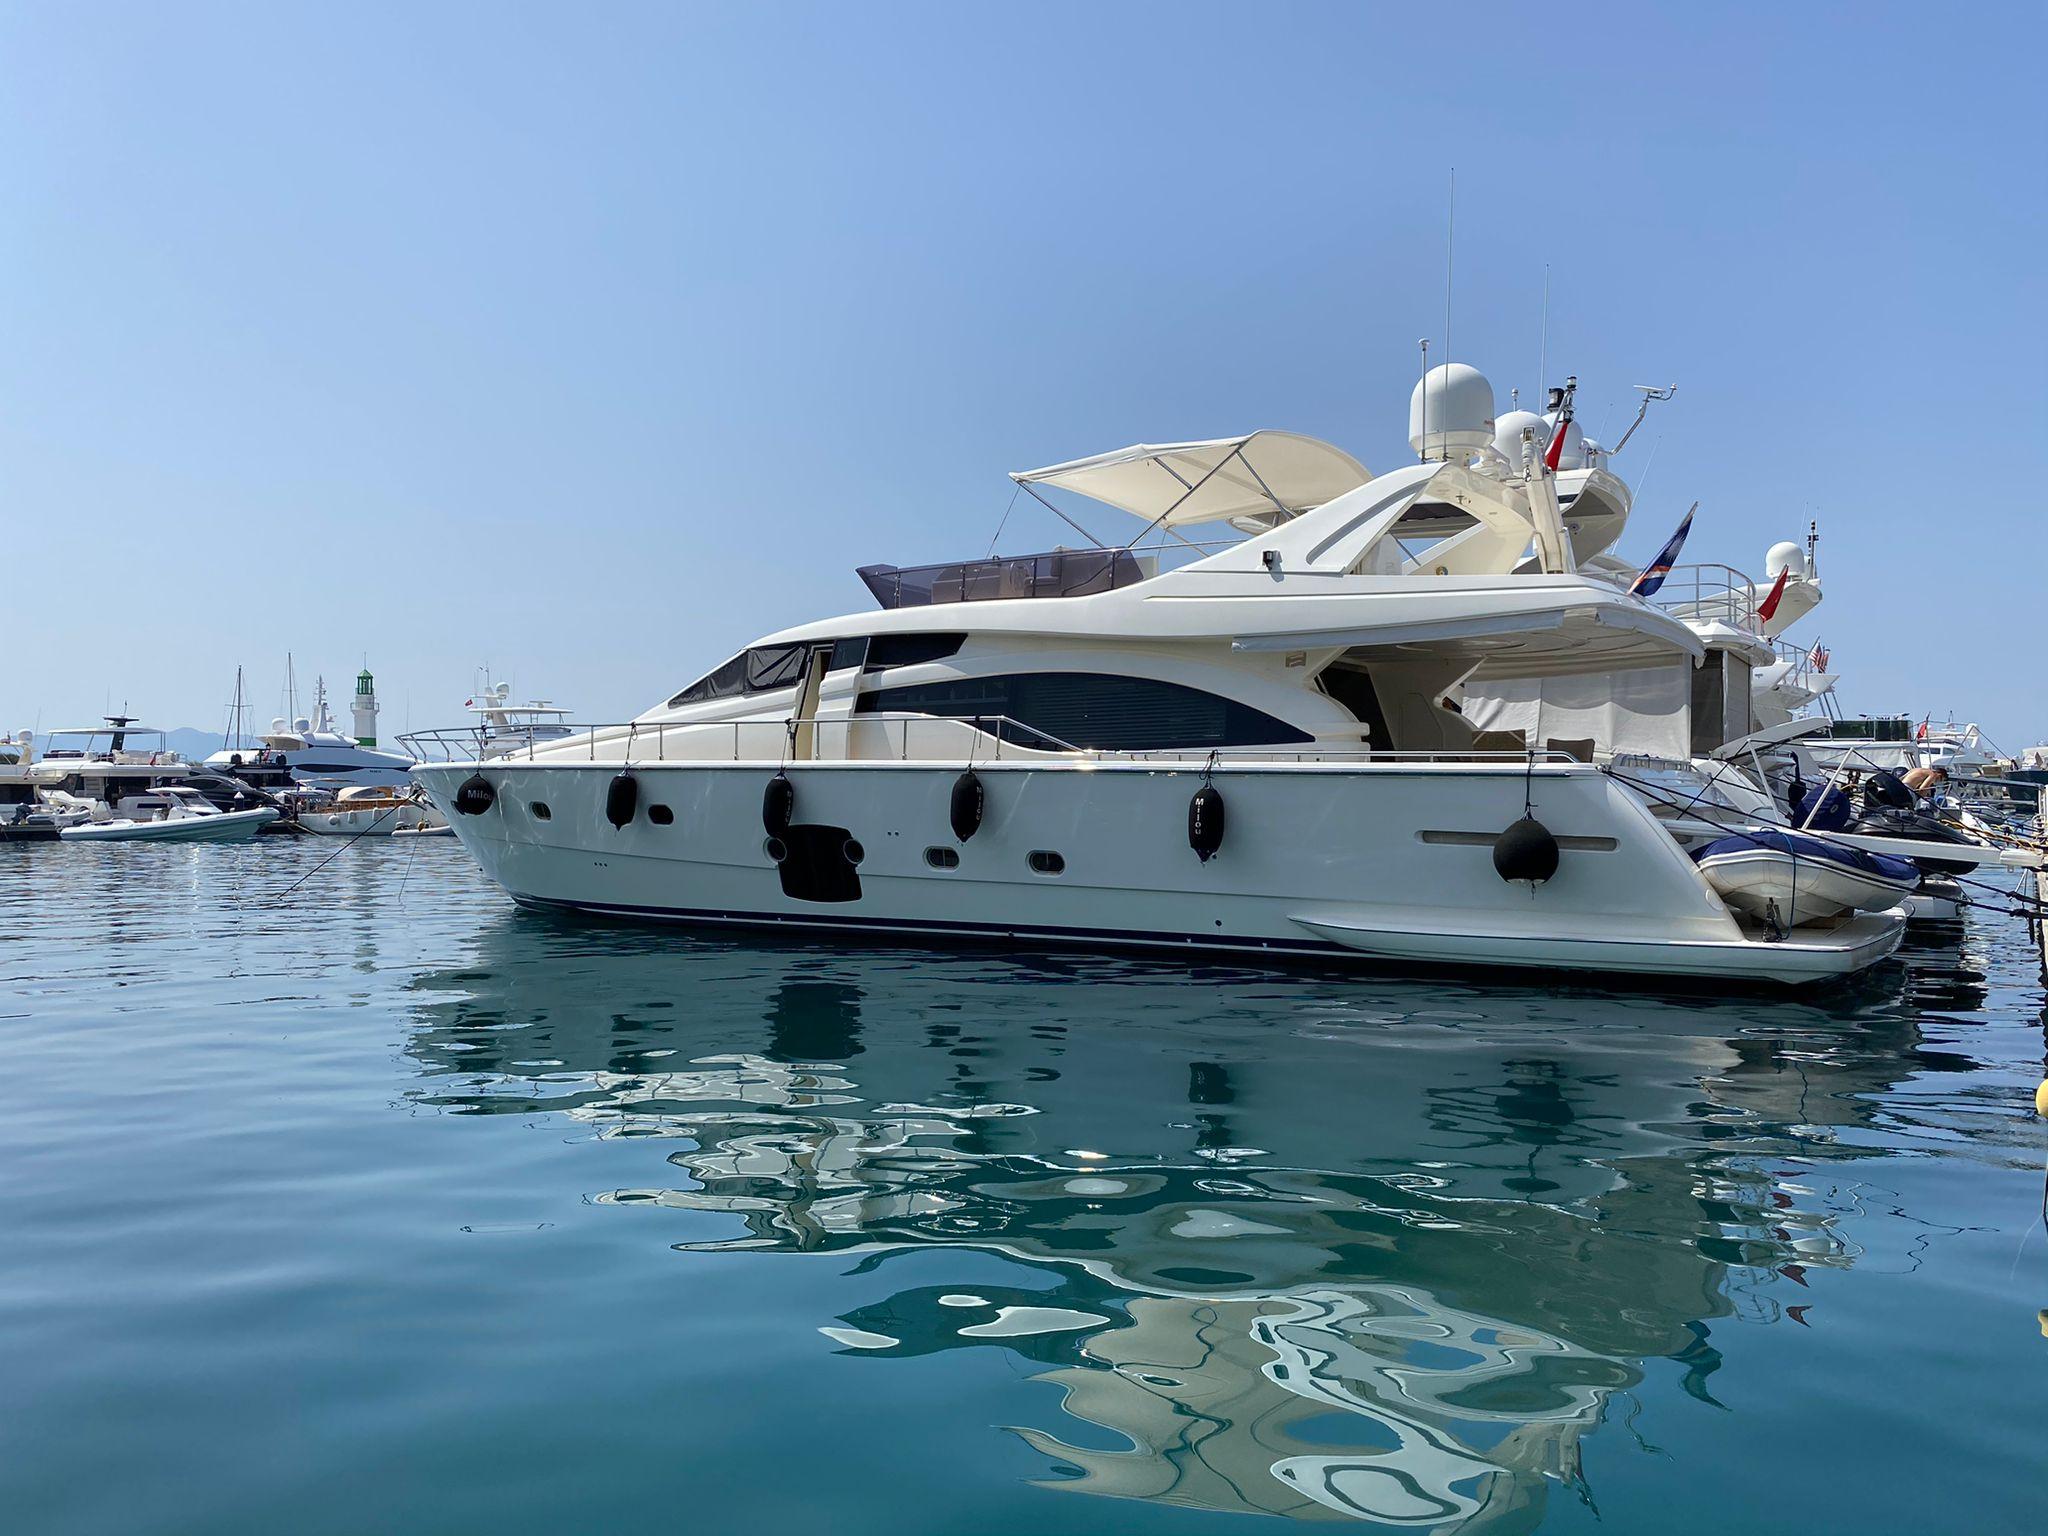 2012 Ferretti Yachts 700